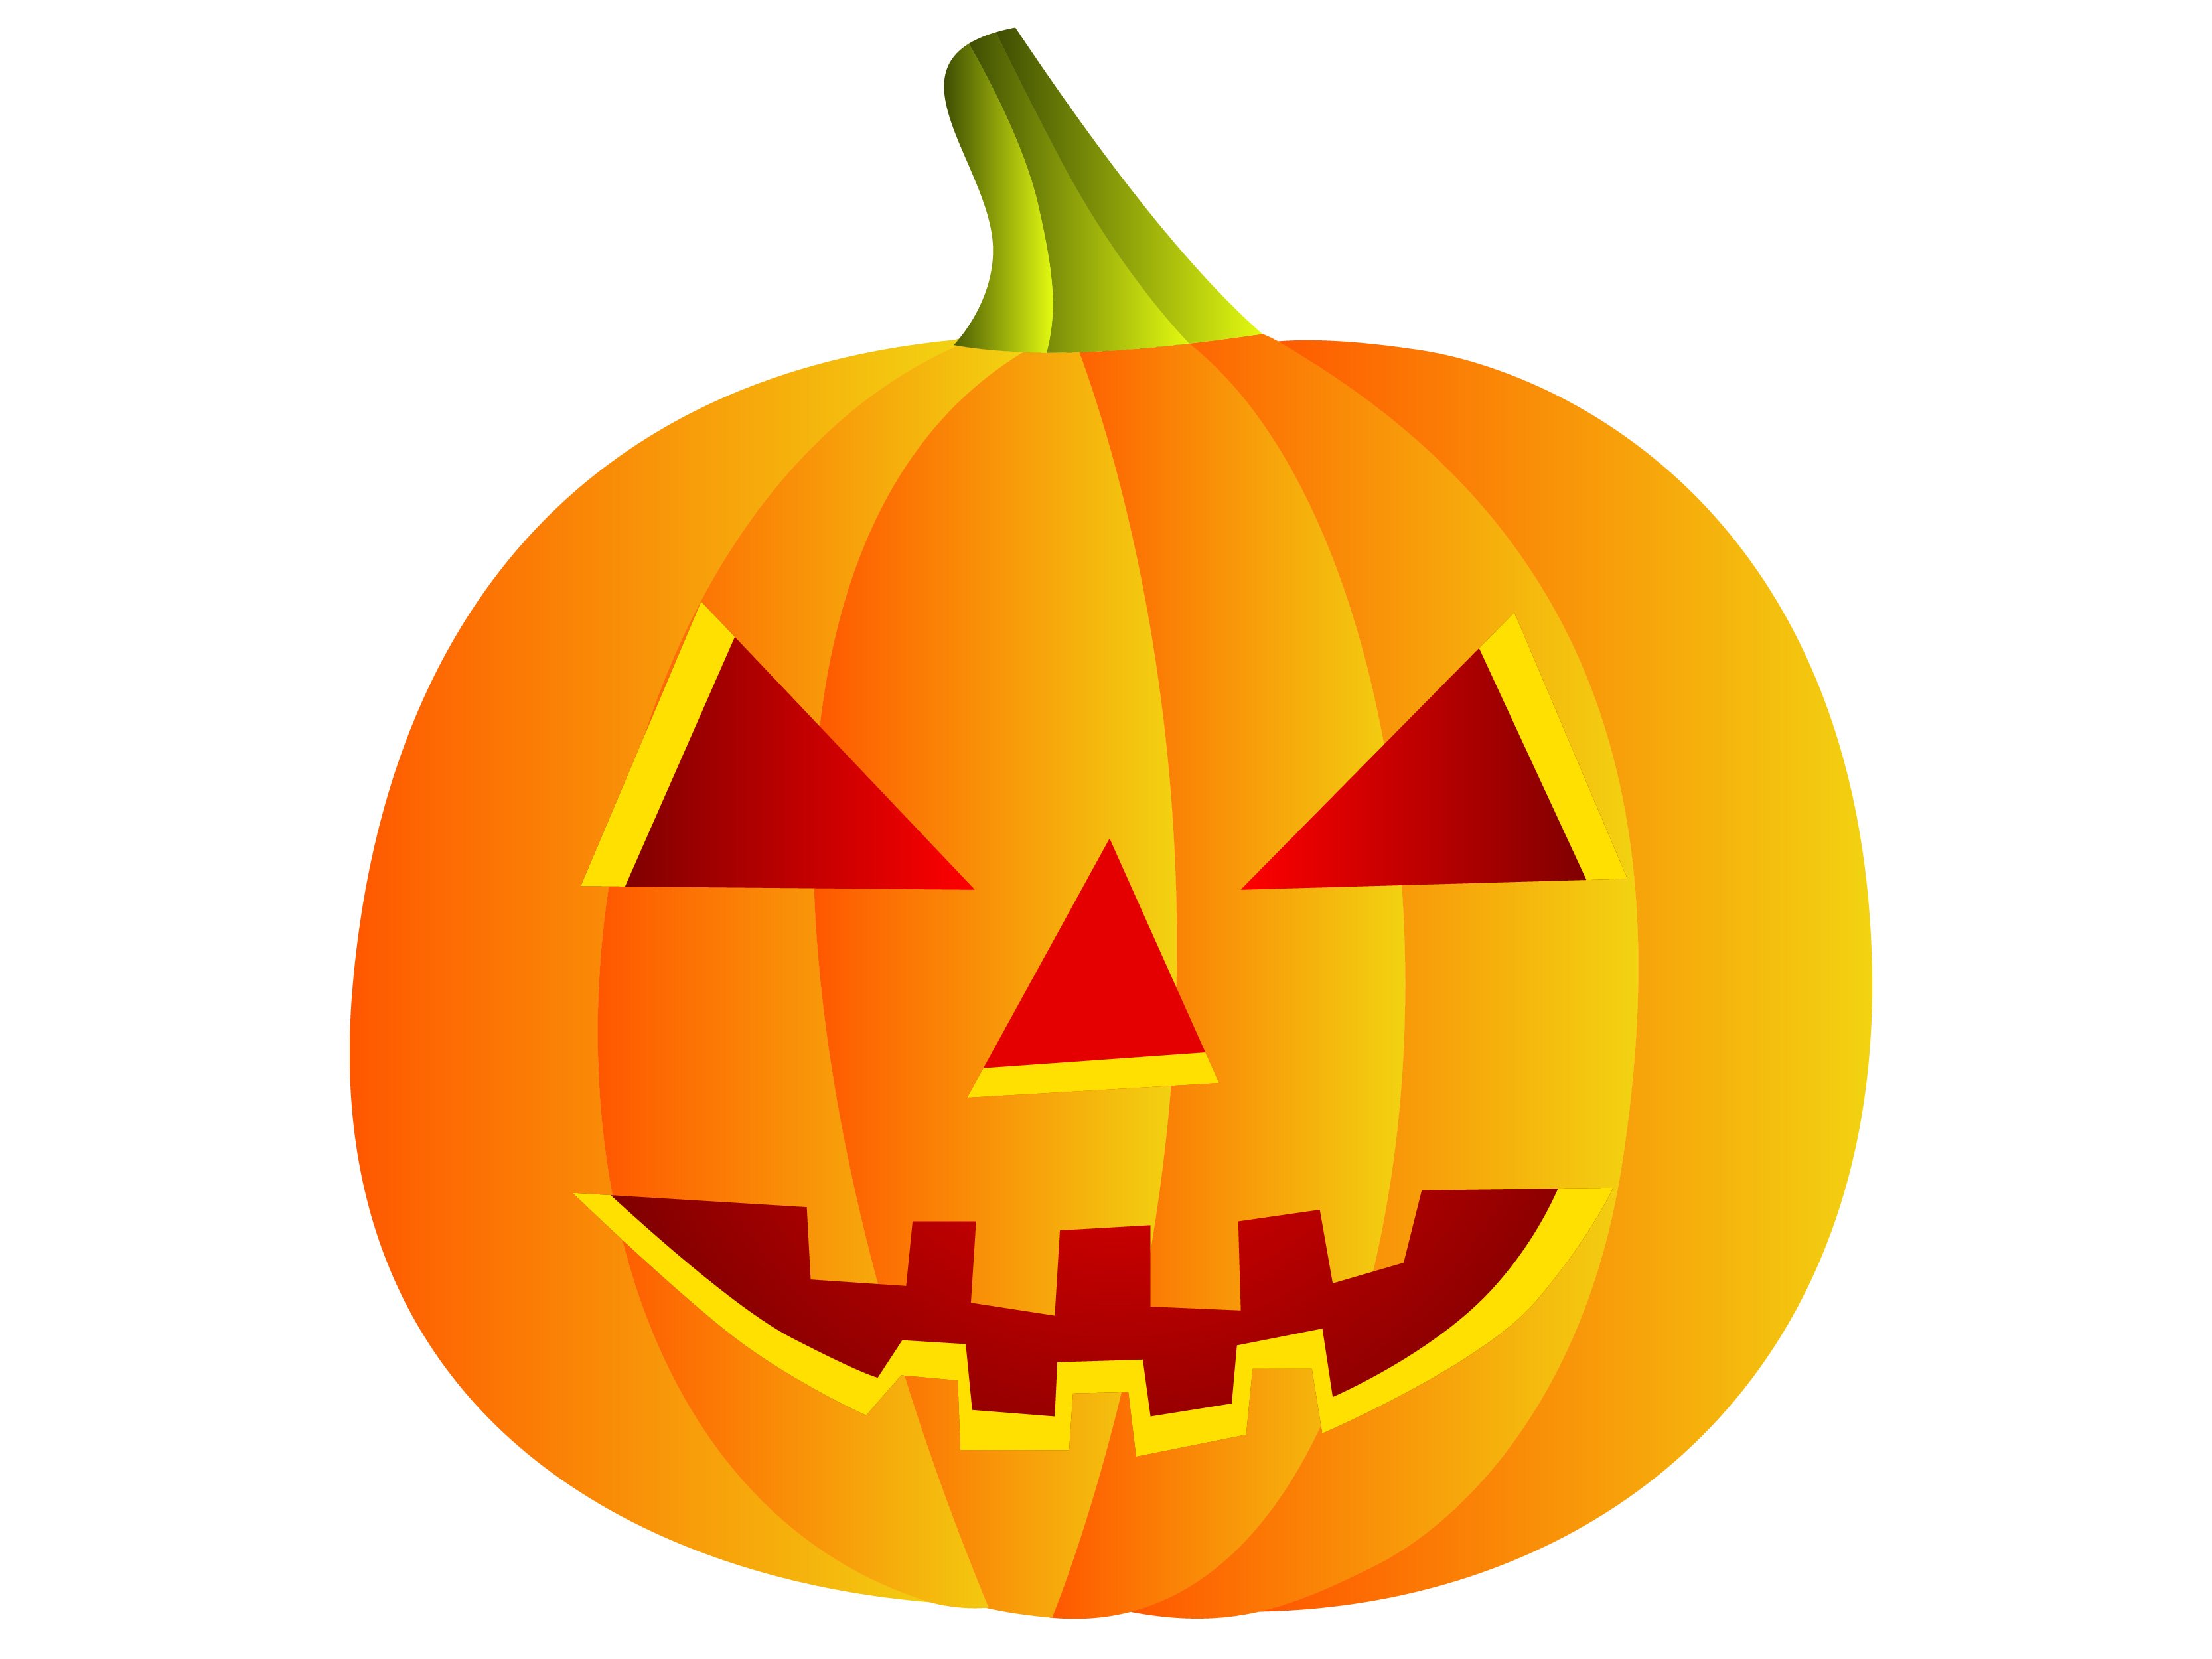 Download Free Vector Happy Halloween 2012 Pumpkin Image In (.ai ...